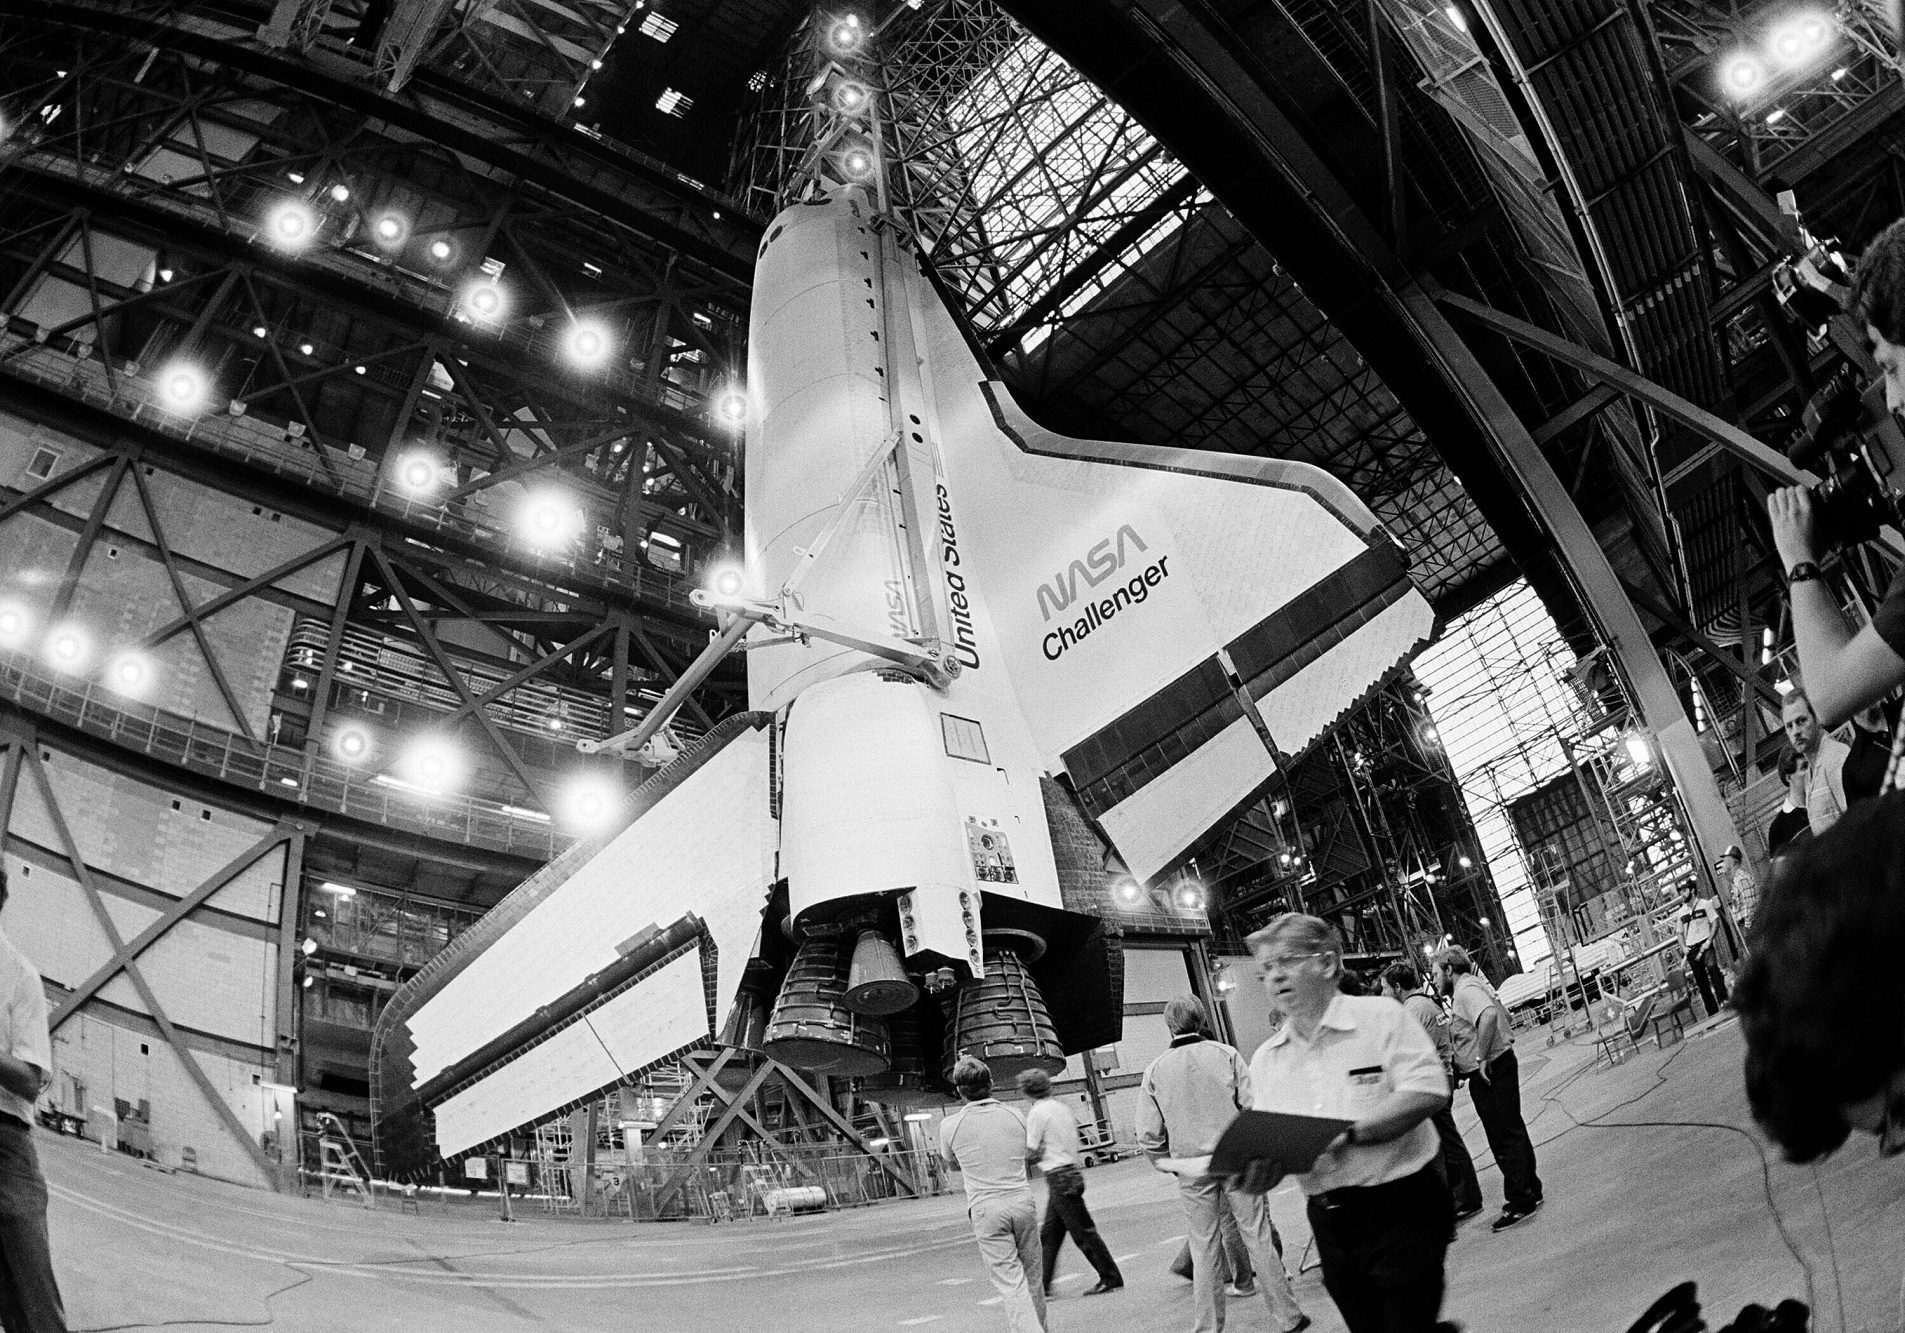 Στον βυθό του Ατλαντικού βρέθηκαν συντρίμια του διαστημικού λεωφορείου  Challenger